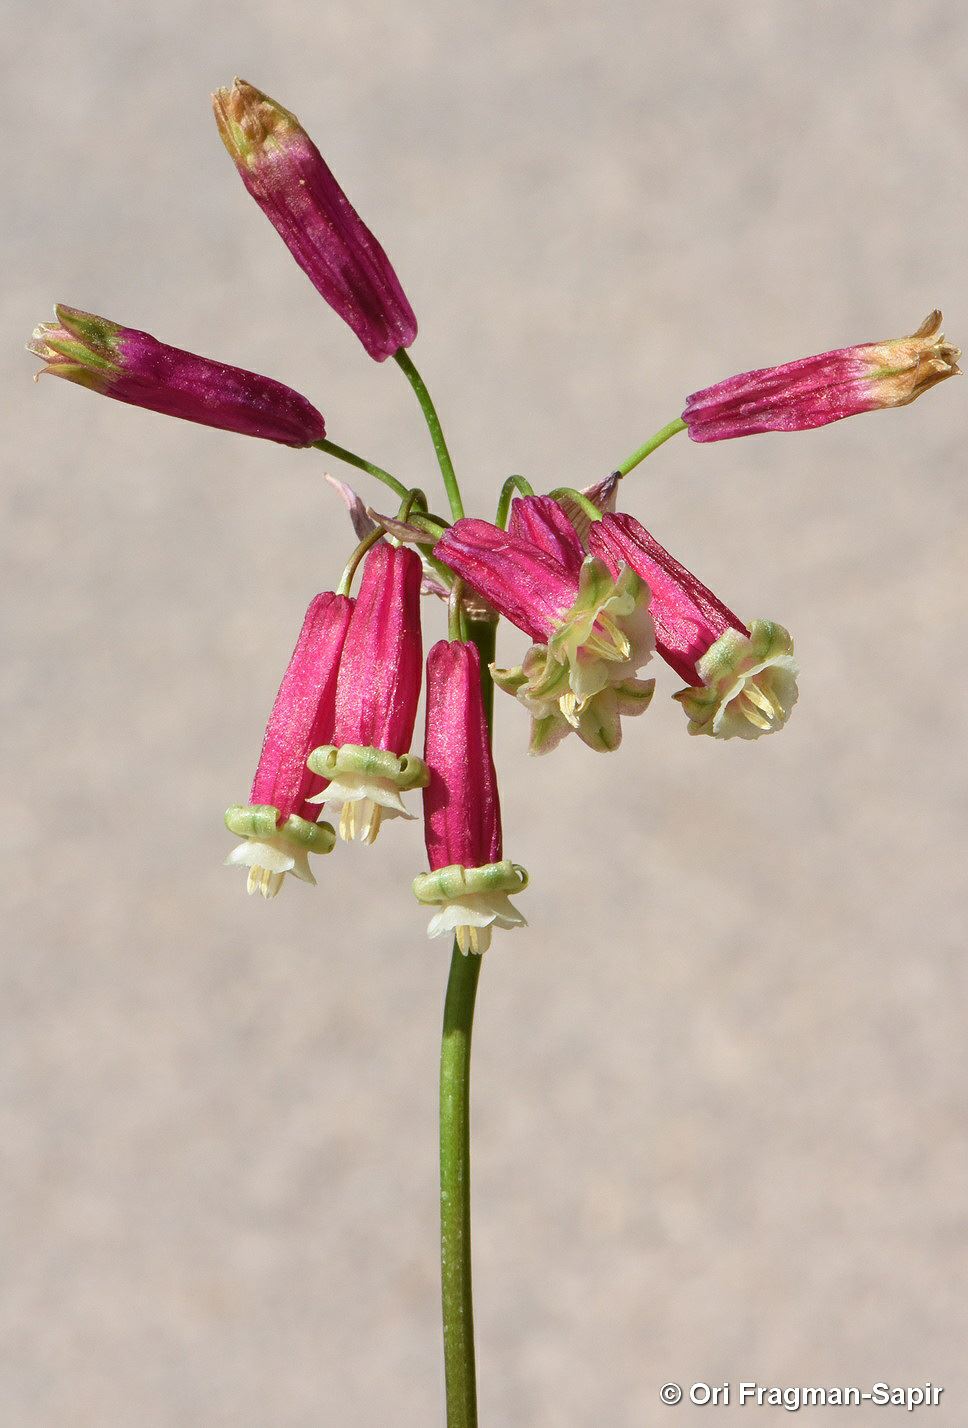 Dichelostemma ida-maia - Firecracker Flower, דיכלוסטמה אידה-מאיה, דיכלוסטמה אידה-מאיה